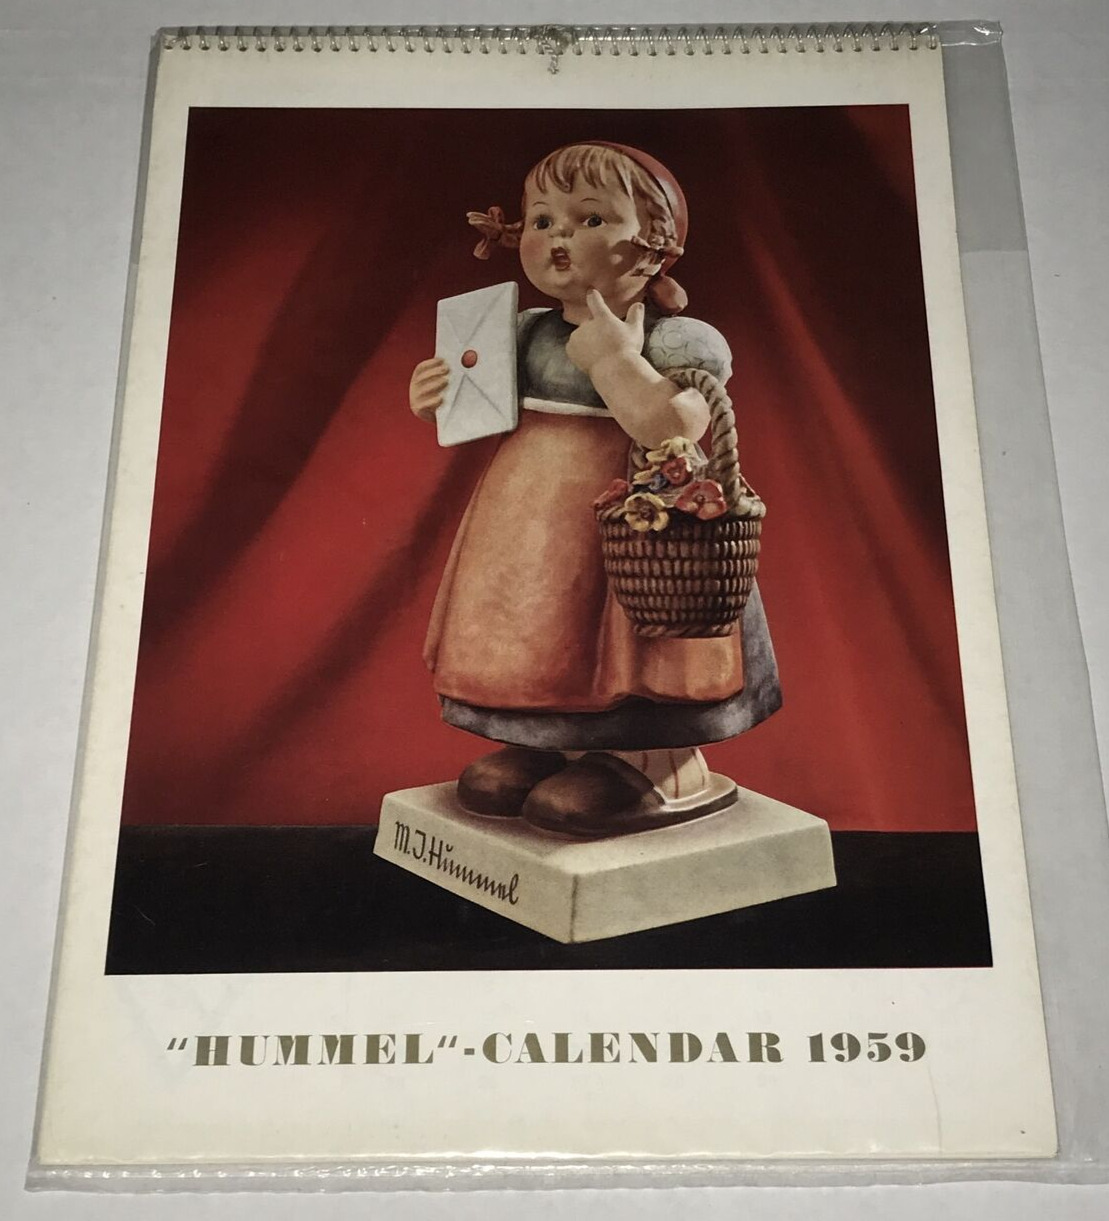 Vintage 1959 Hummel Figurine Calendar Goebel Photographs Pictures NEW US Version